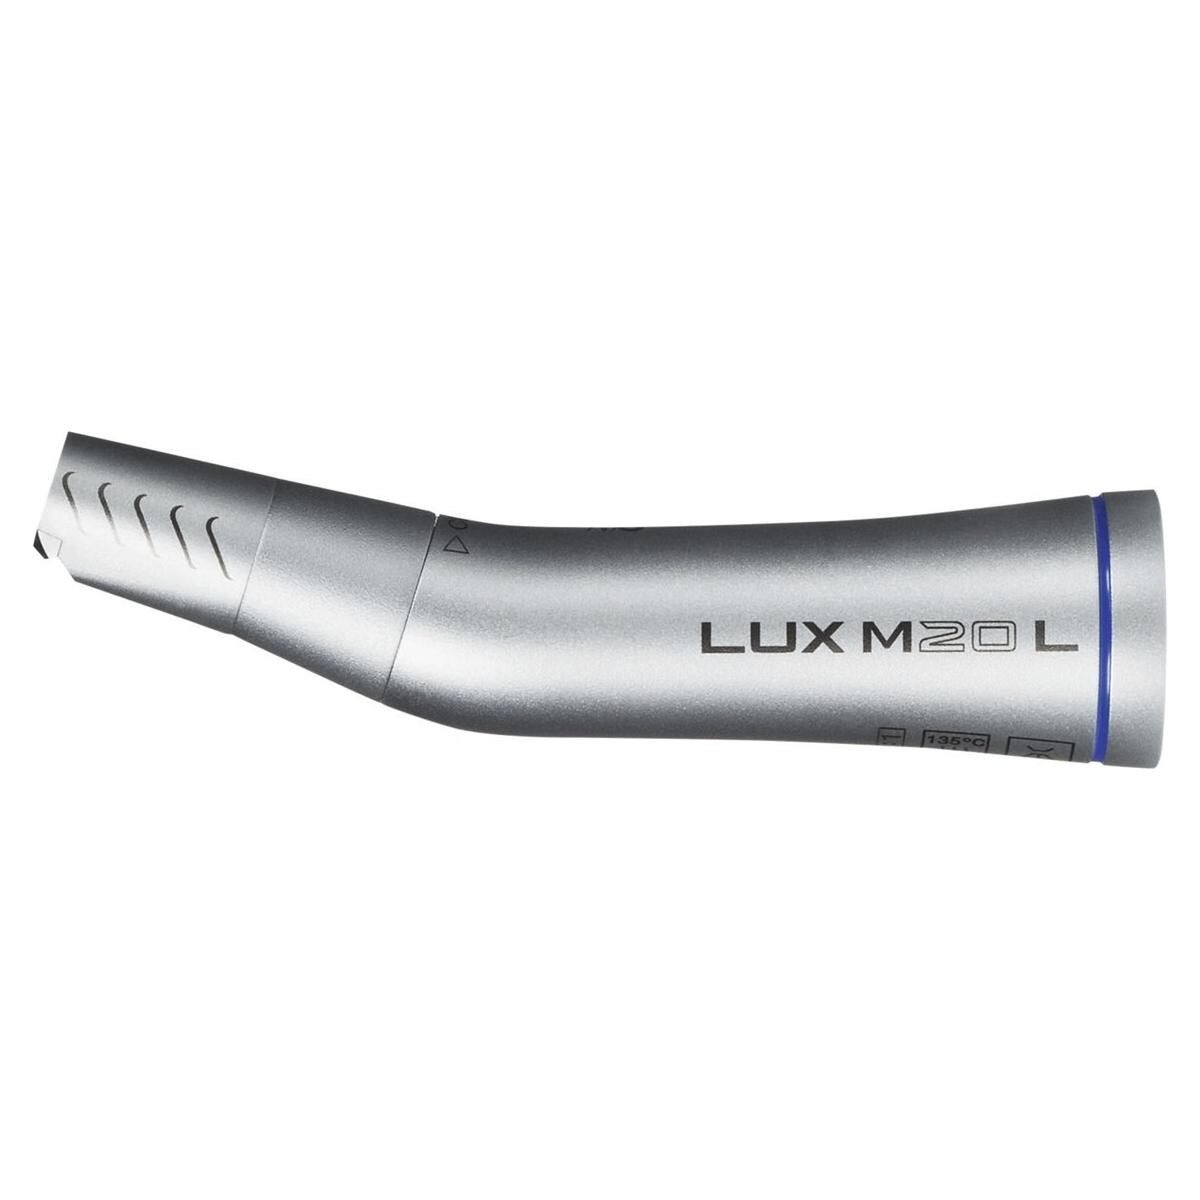 MASTERmatic Lux hoekstukken - M20L (1:1) blauw